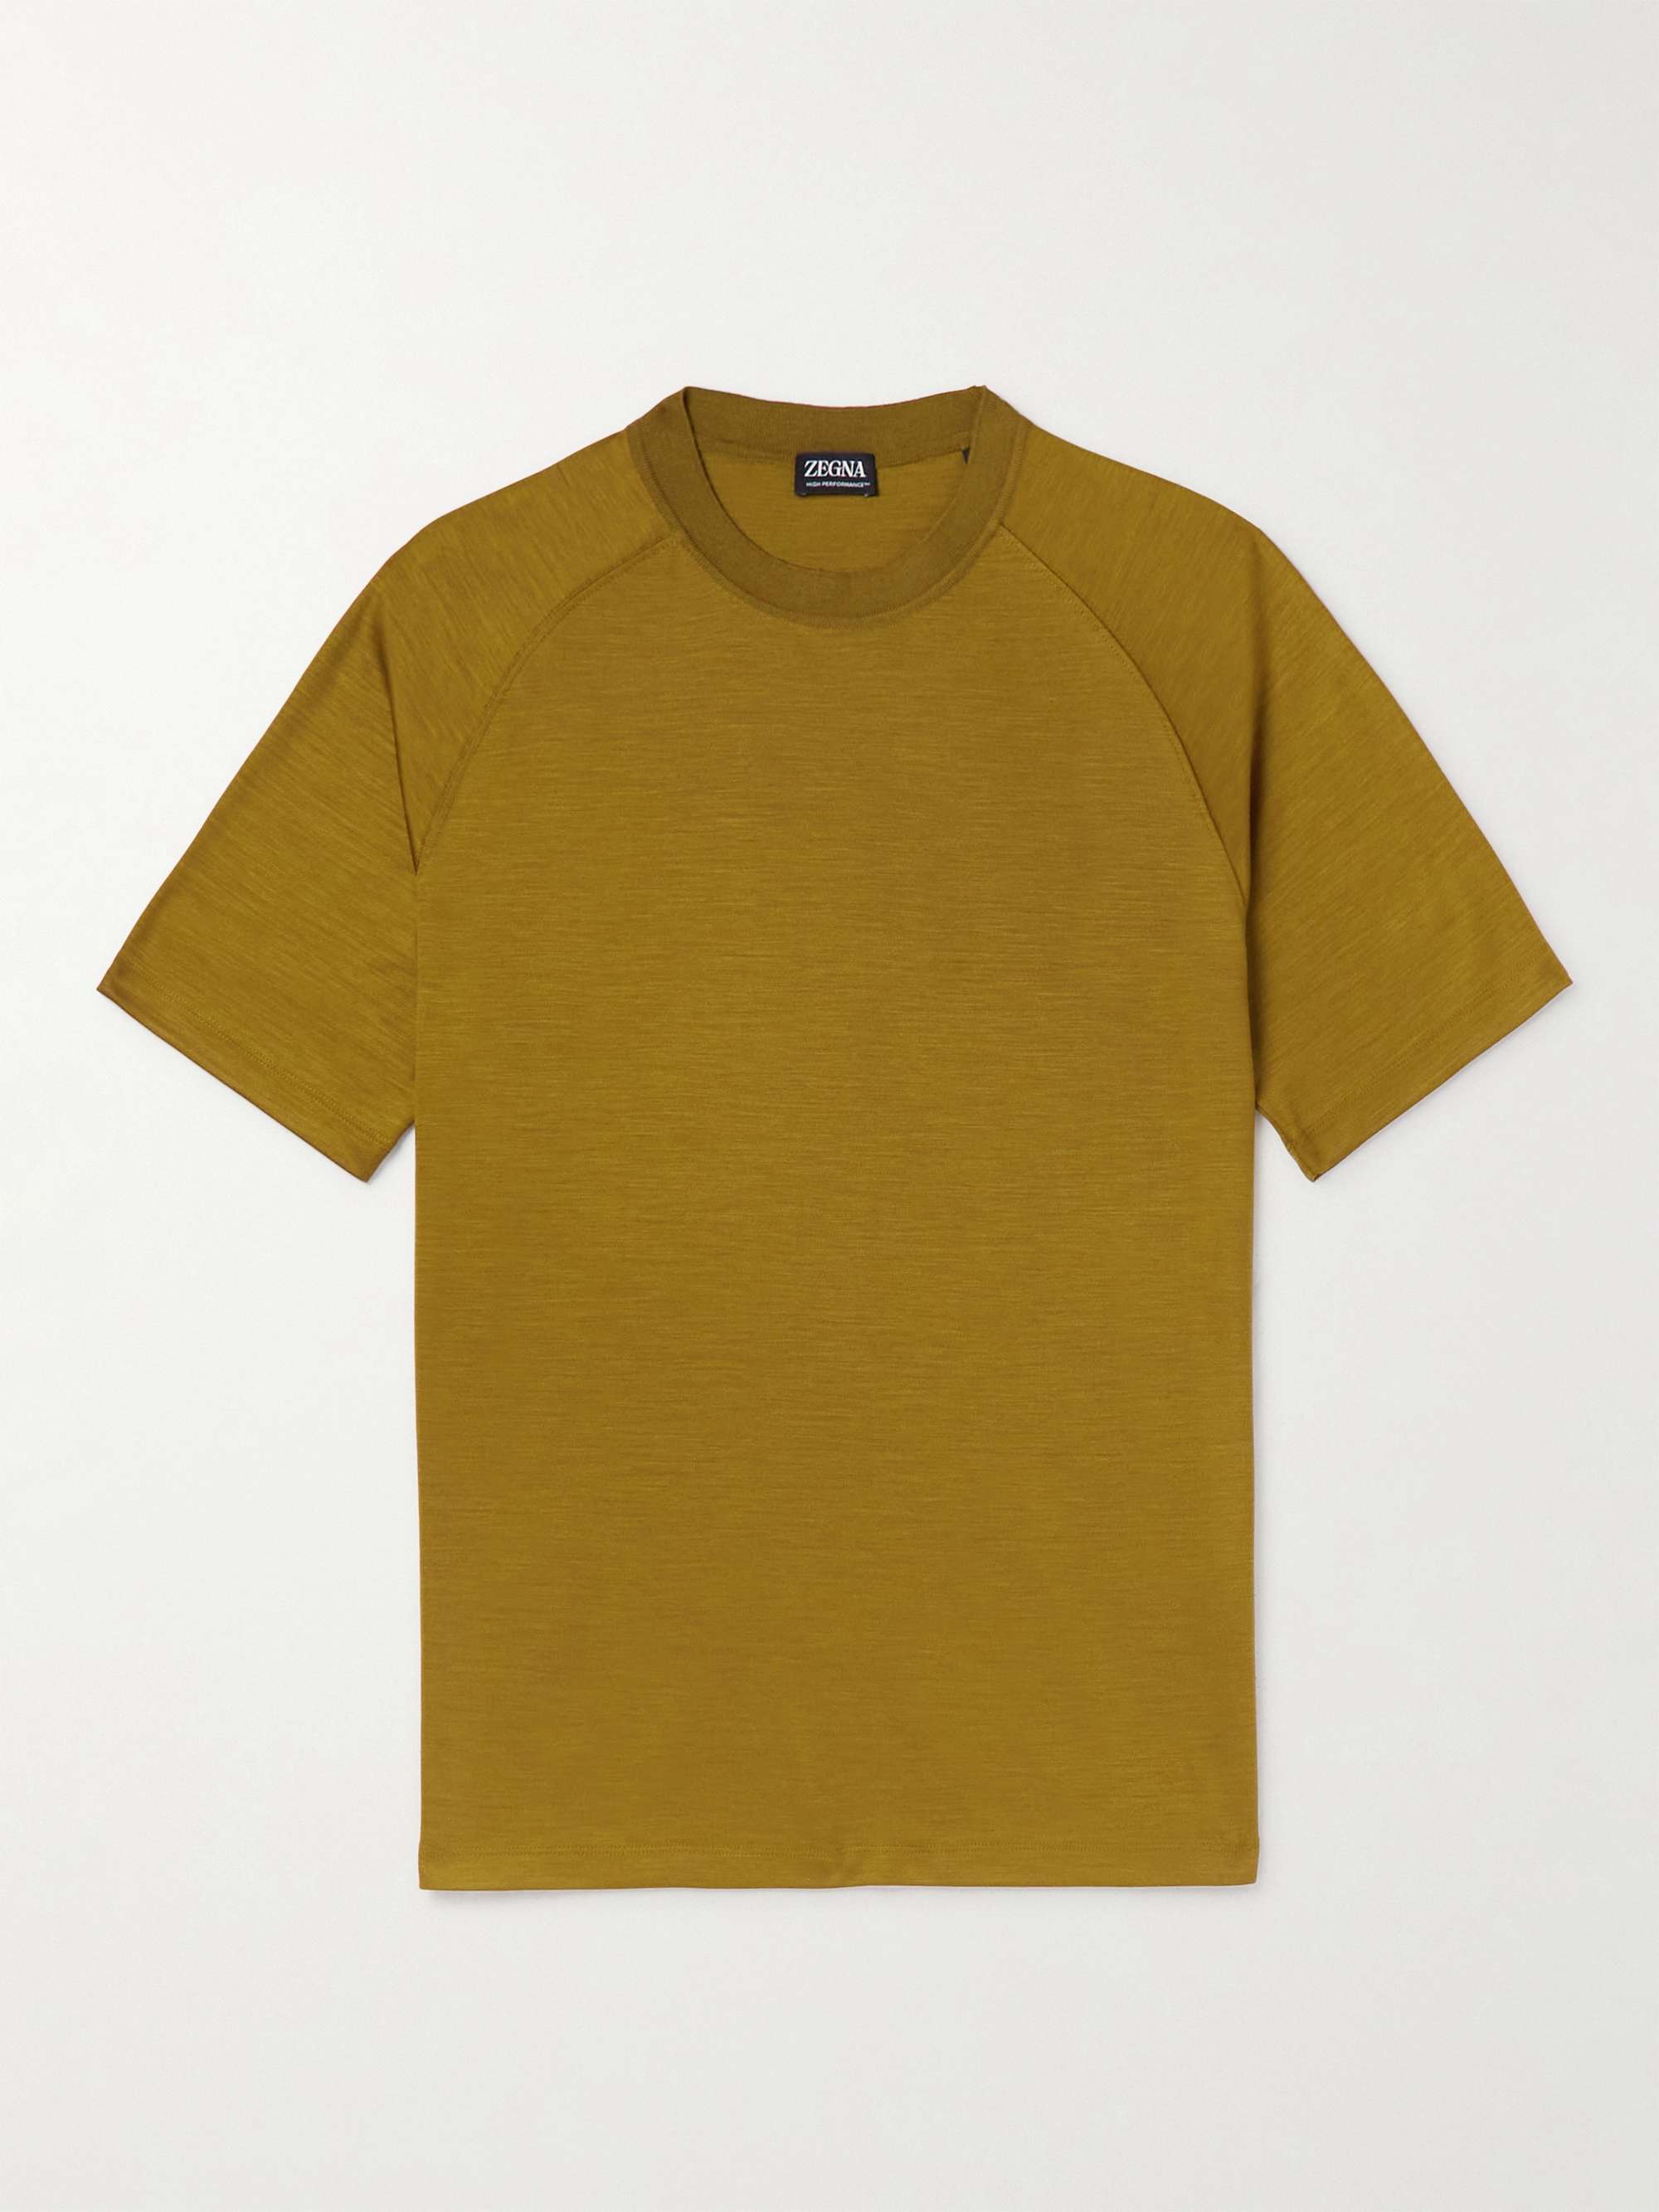 ZEGNA Wool T-Shirt | MR PORTER